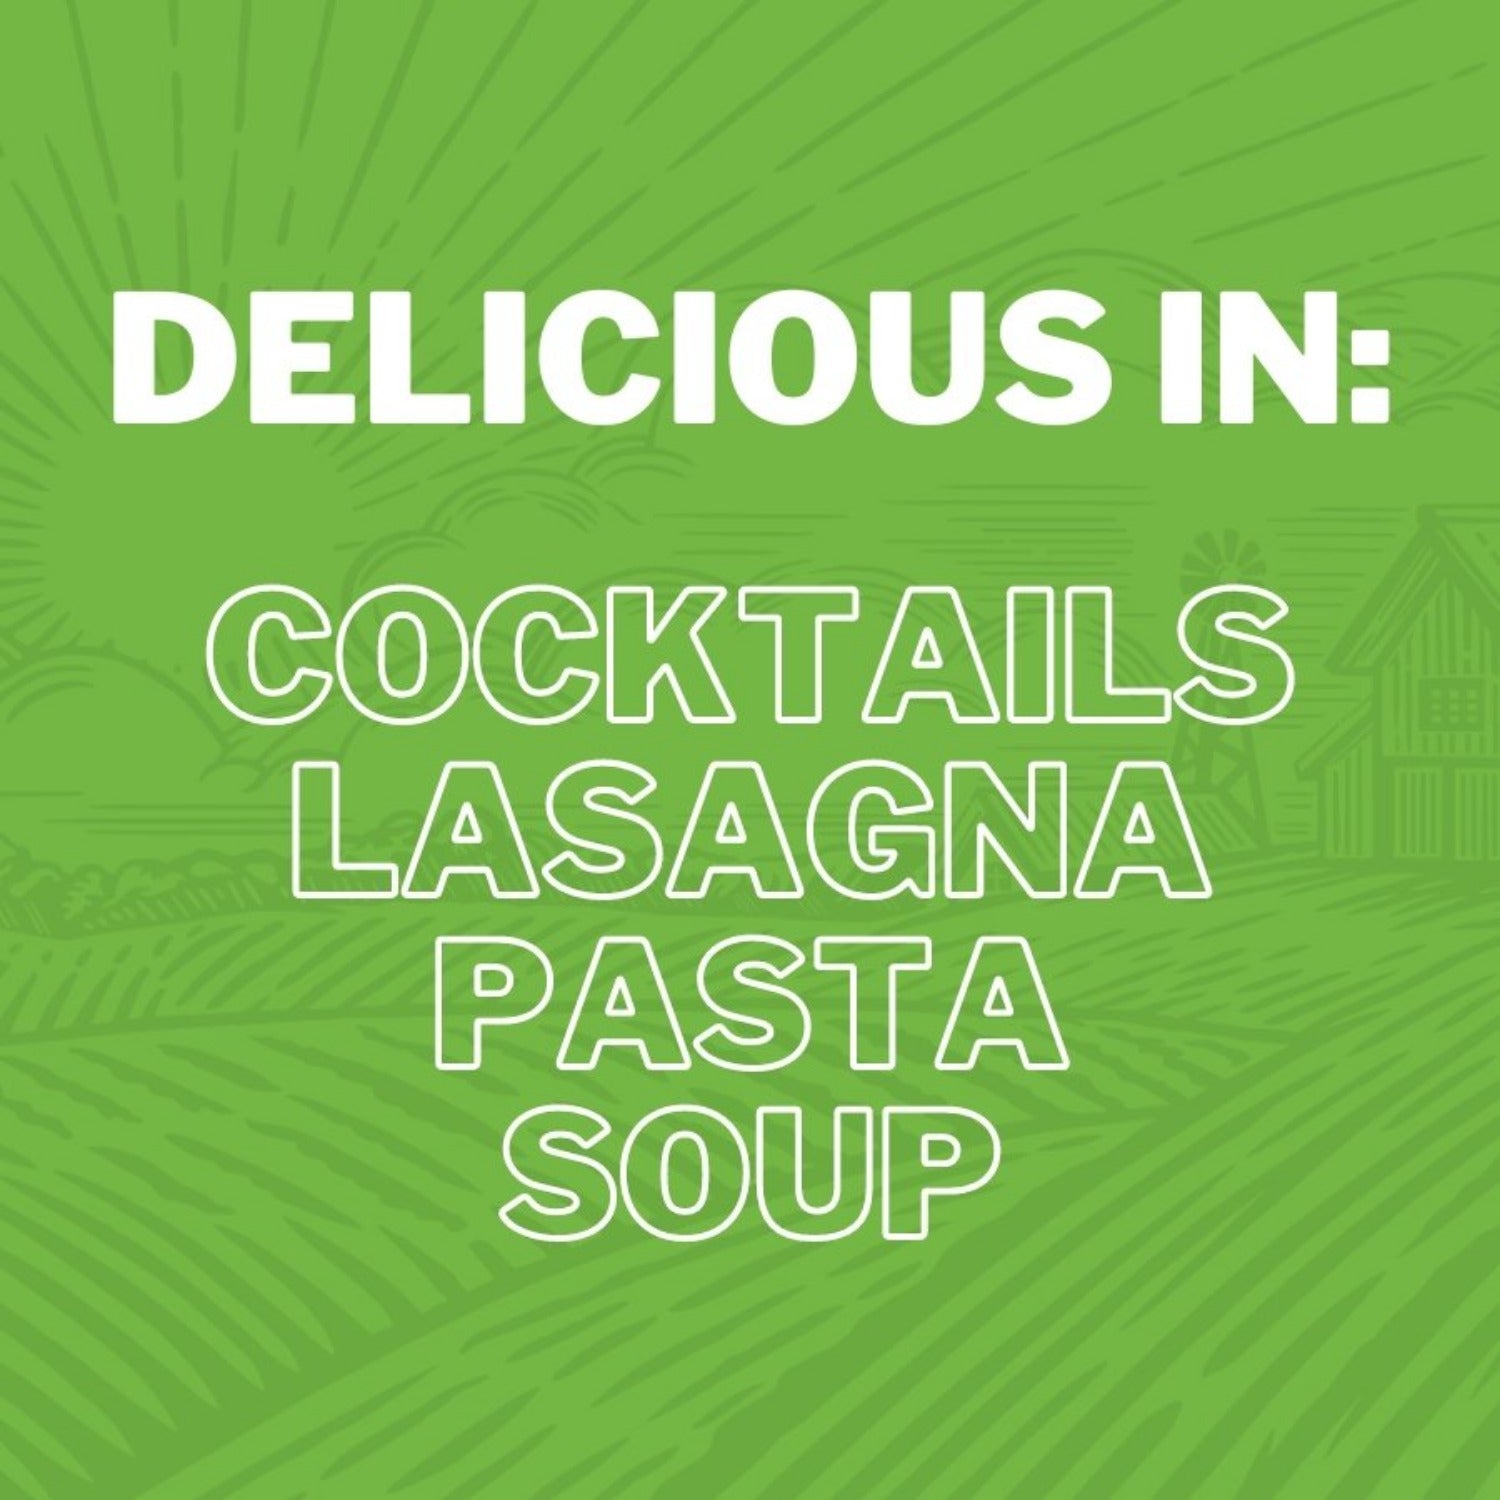 Delicious in: Cocktails Lasagna Pasta Soup